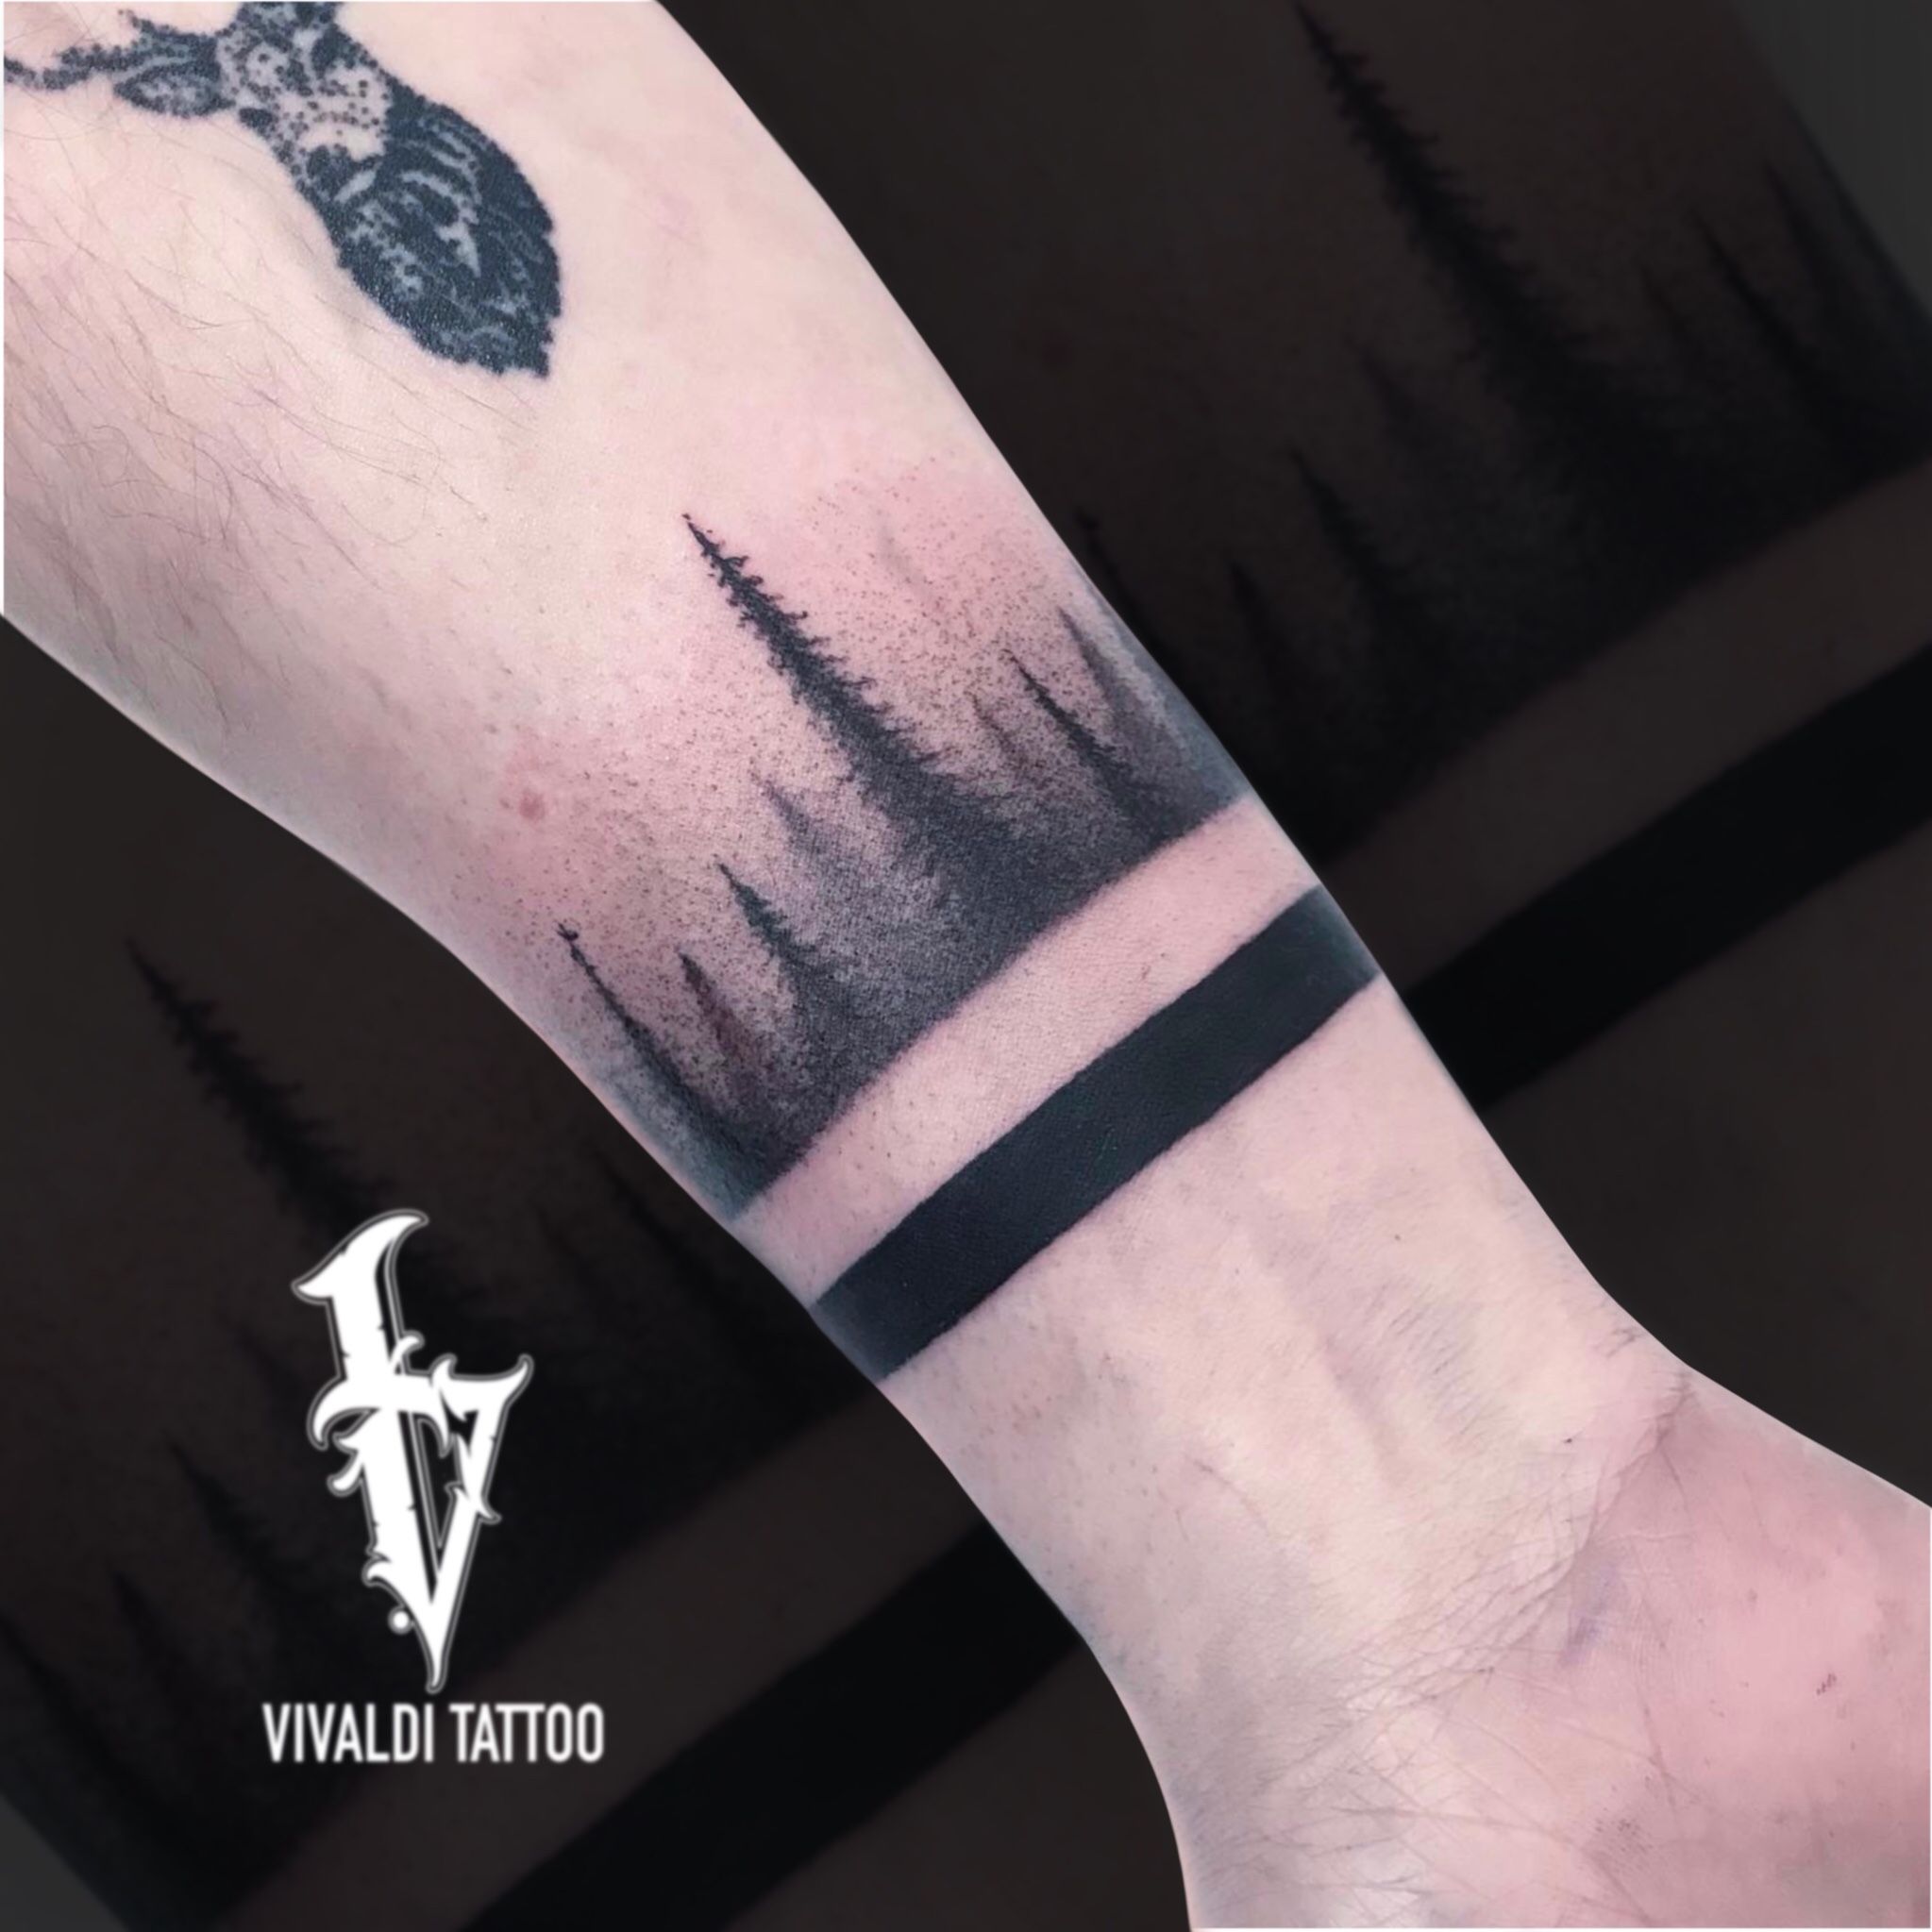 forest tattoo